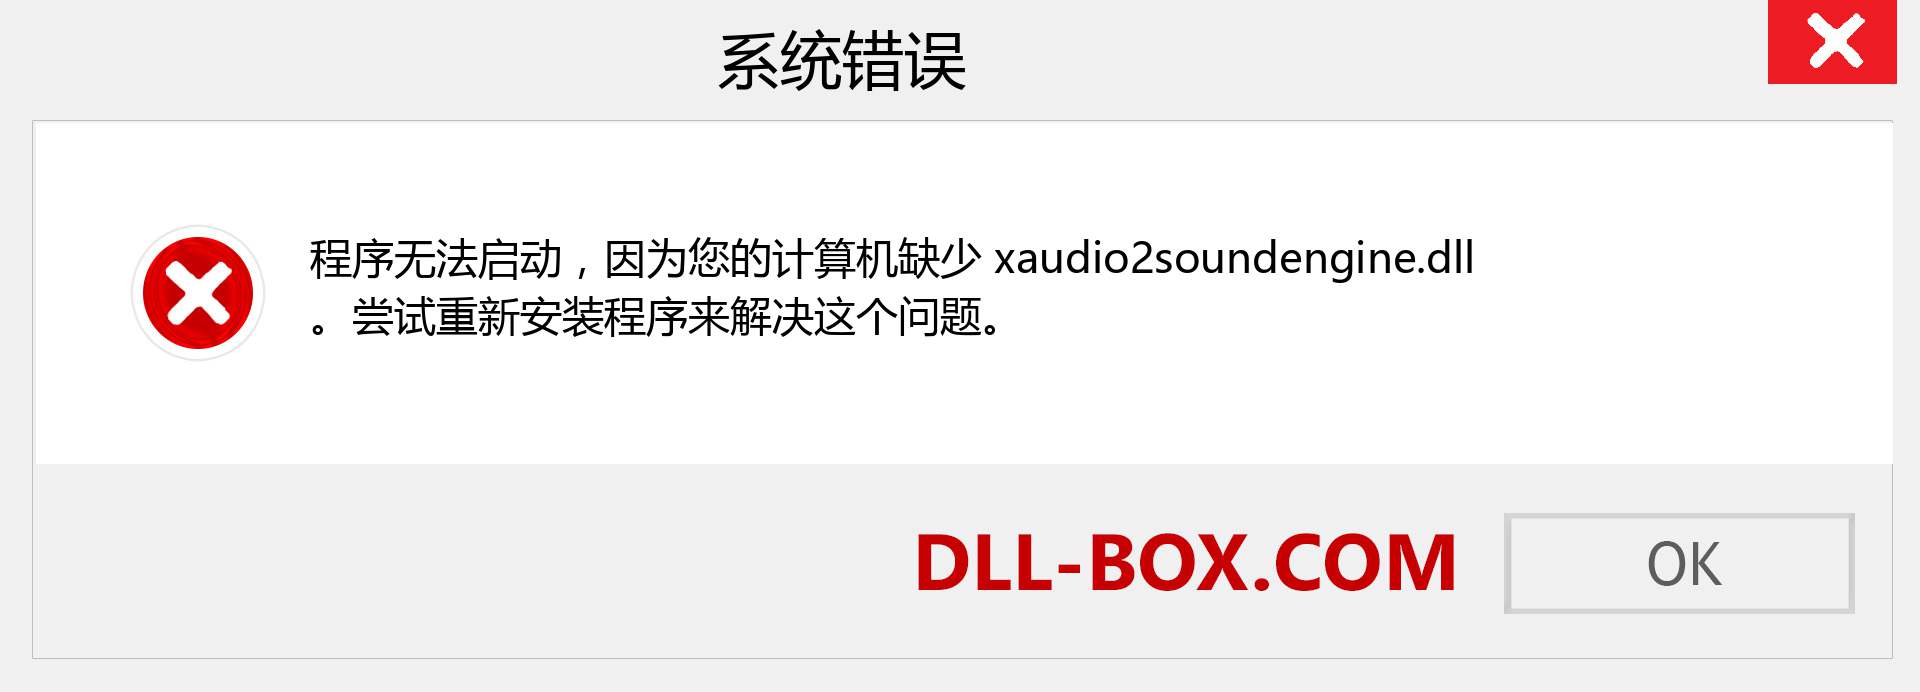 xaudio2soundengine.dll 文件丢失？。 适用于 Windows 7、8、10 的下载 - 修复 Windows、照片、图像上的 xaudio2soundengine dll 丢失错误